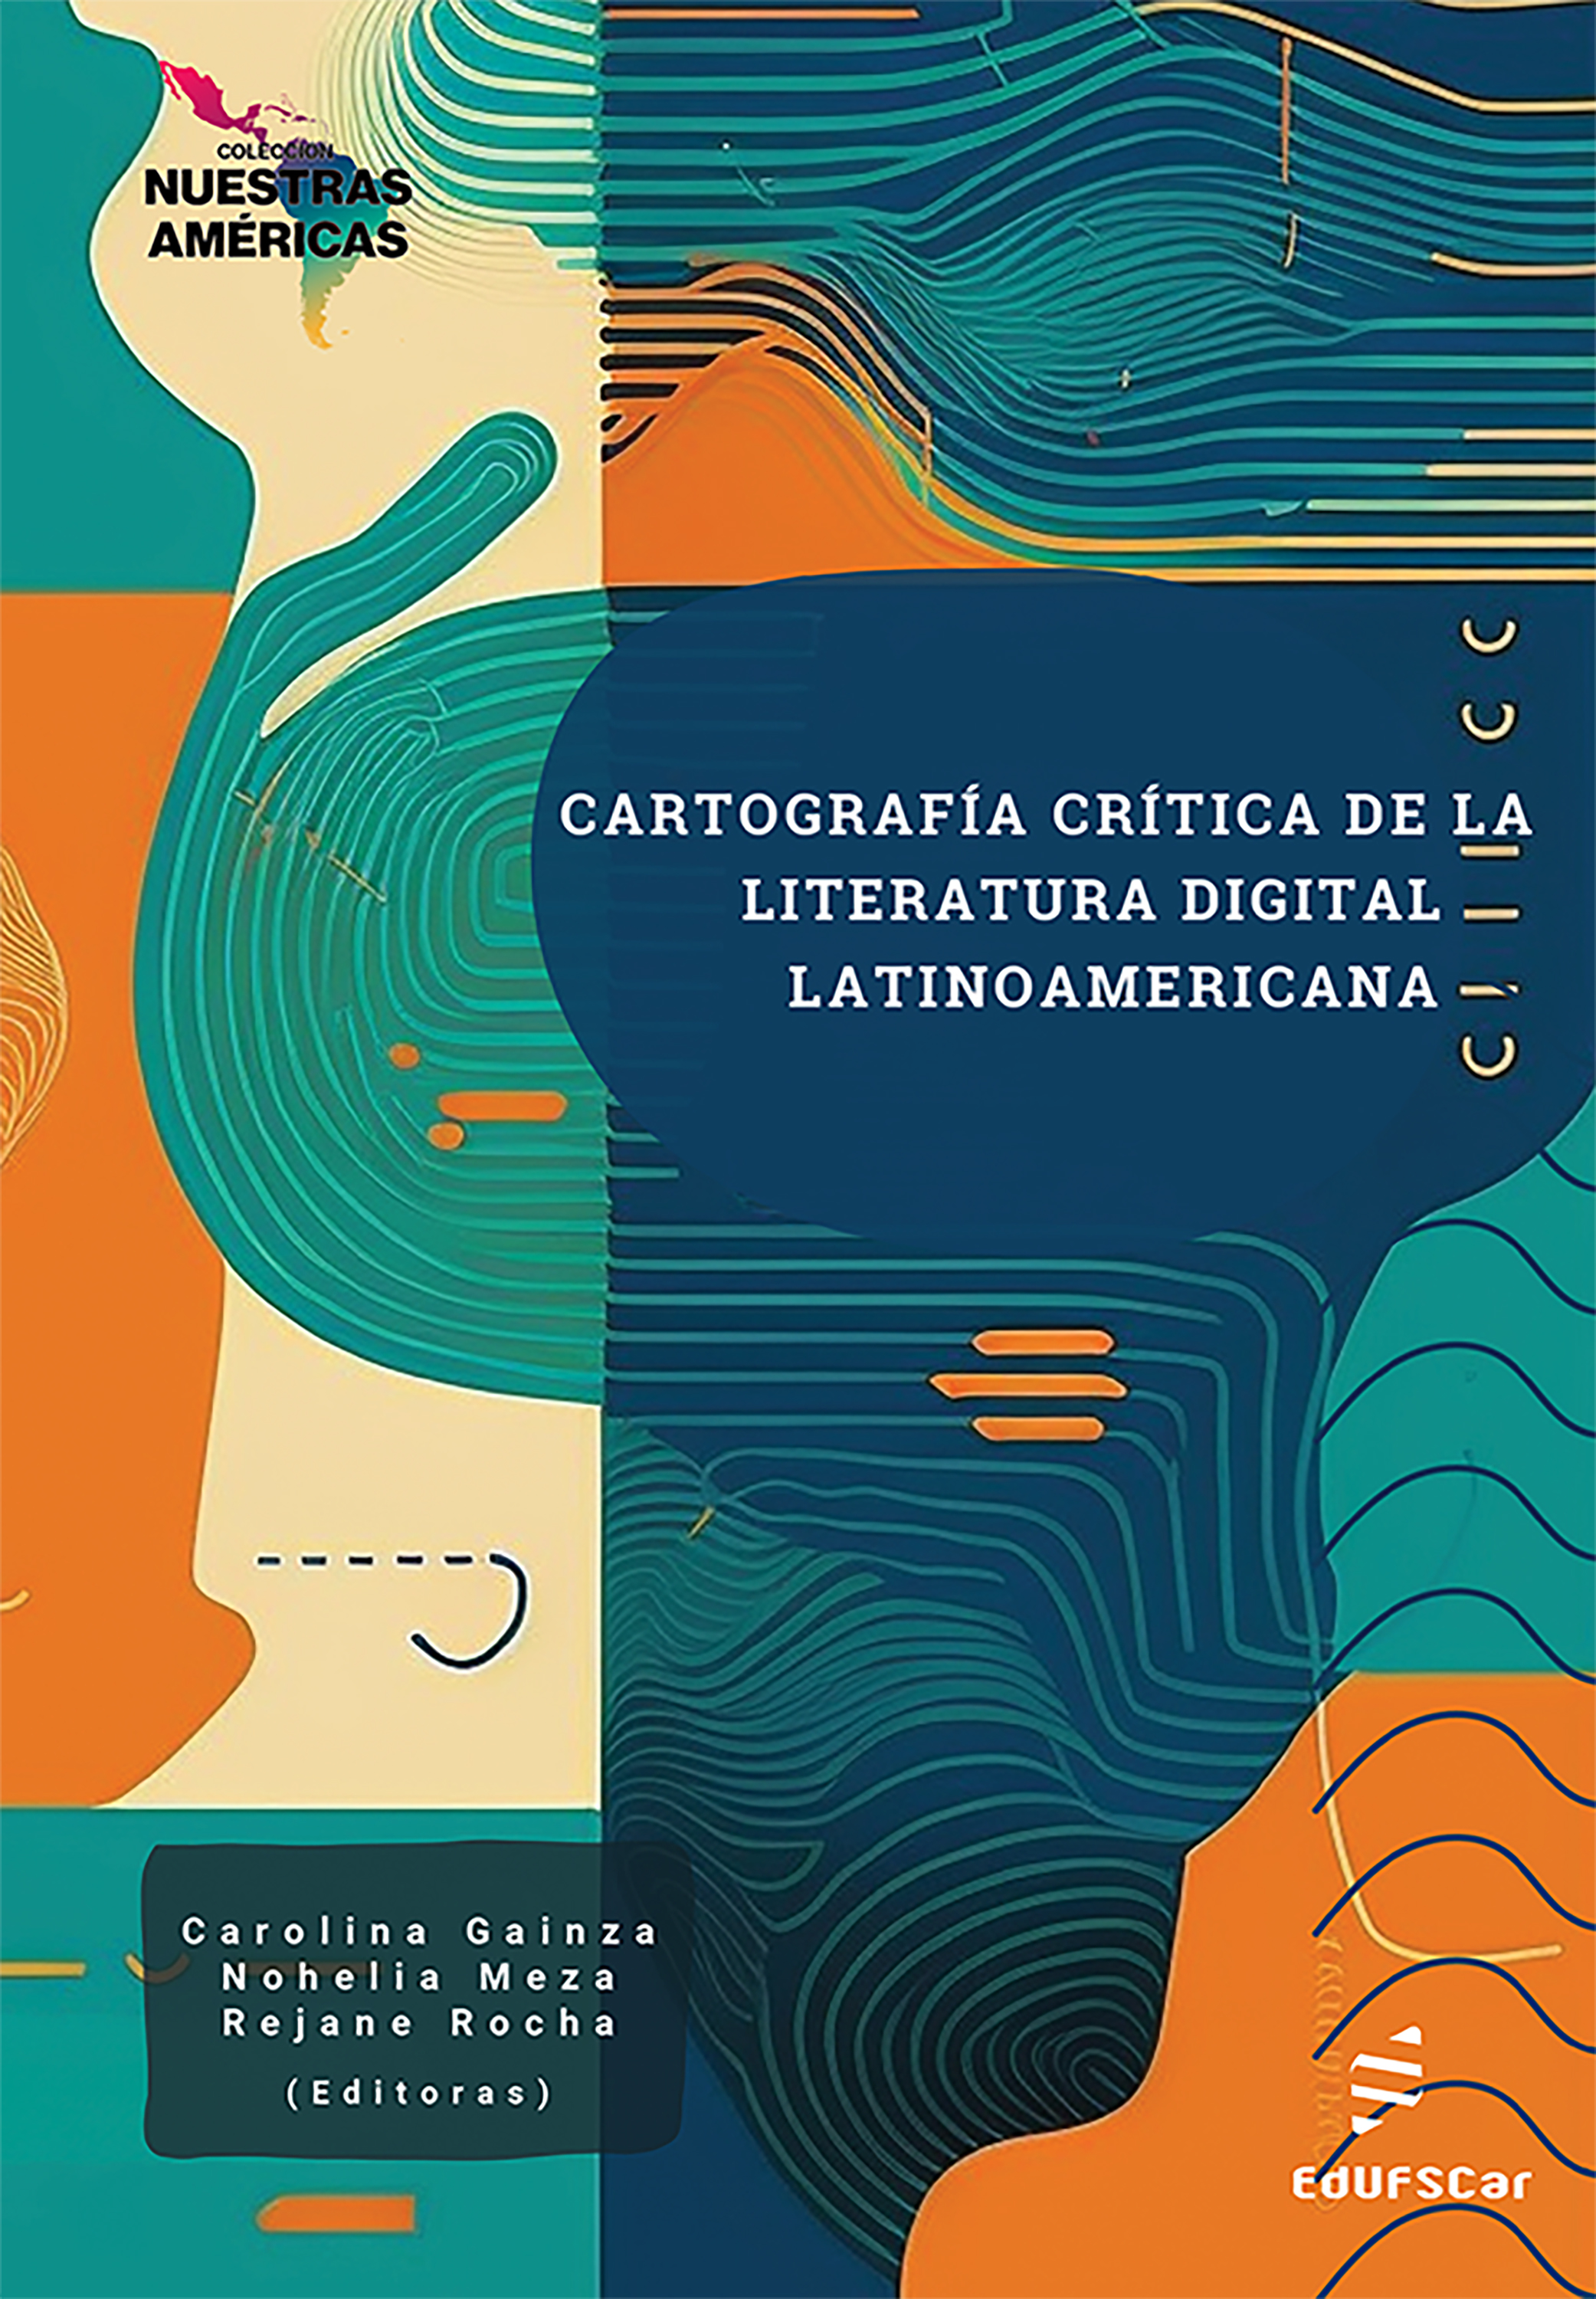 Cartografía crítica de la literatura digital latinoamericana